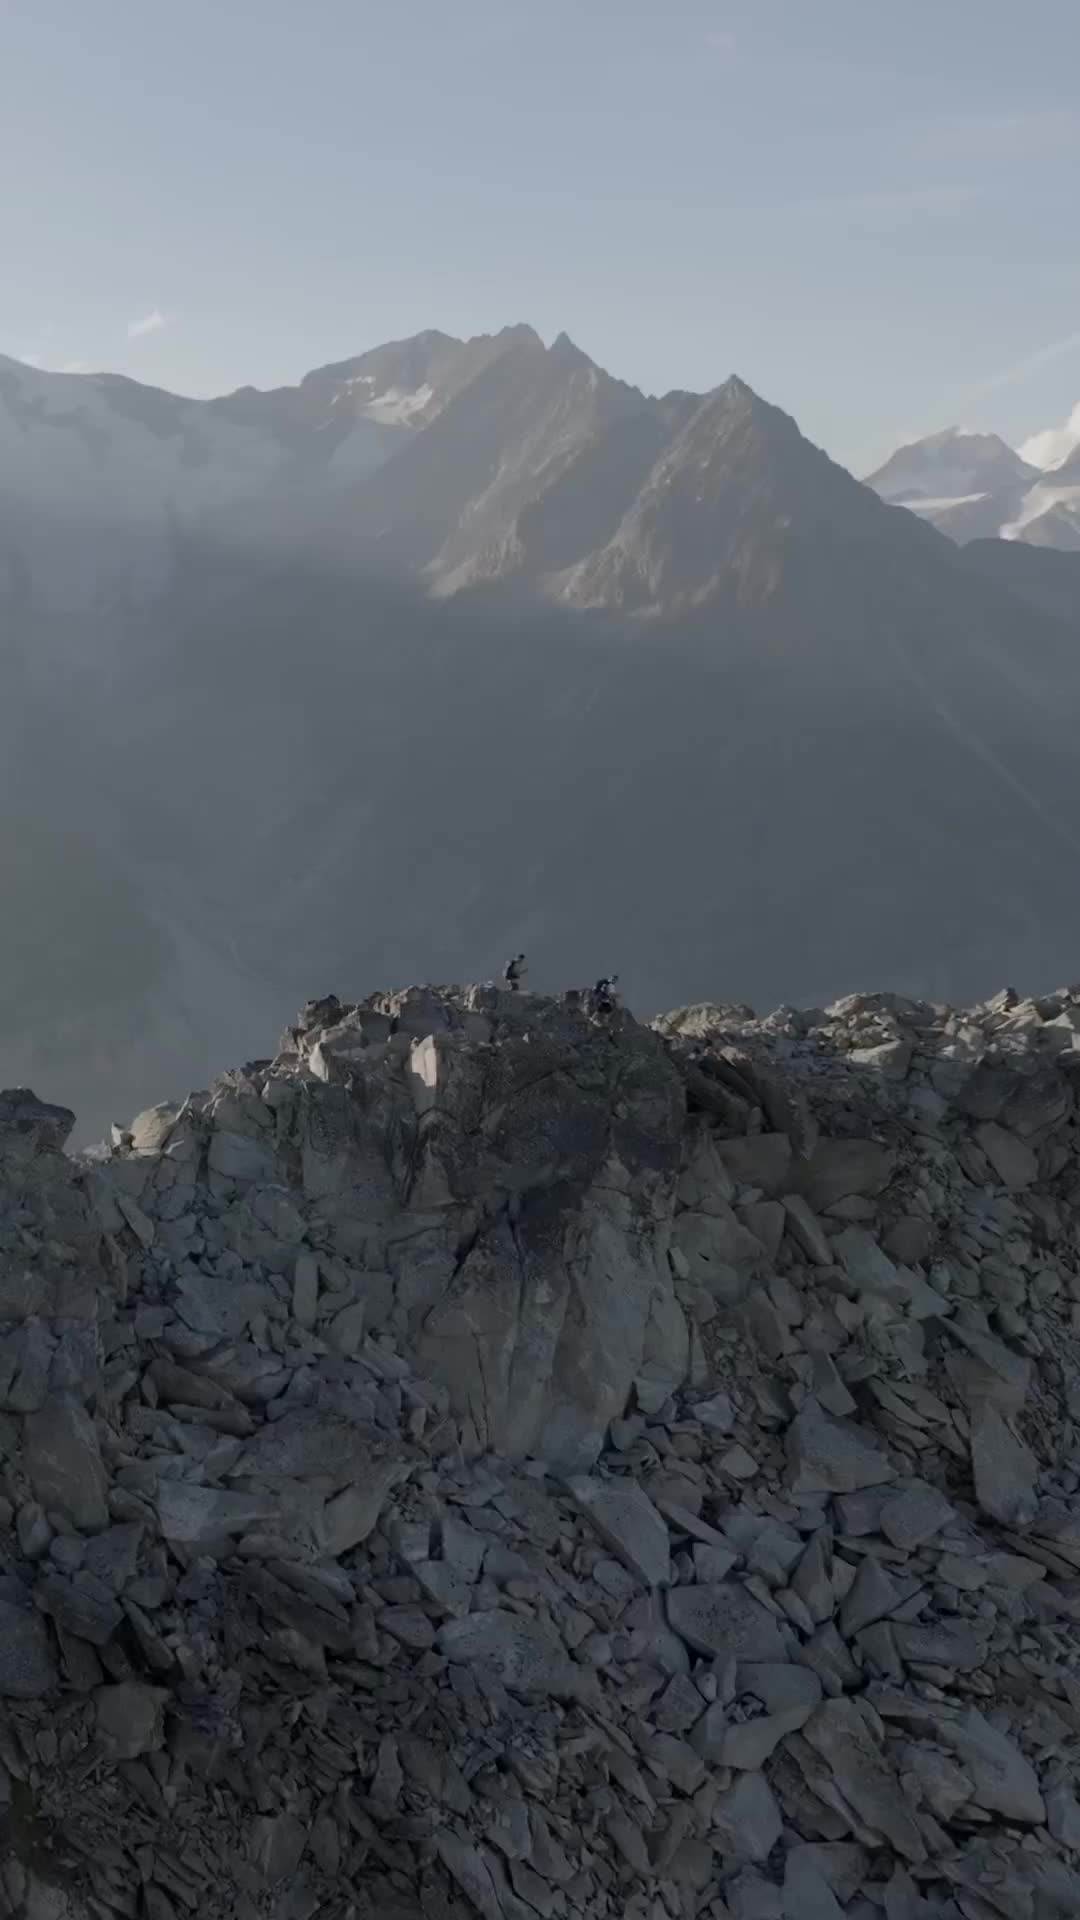 Coisa mágica 🇨🇭Eu e o @manzarra vamos andar a conquistar montanhas pela Suíça nos próximos dias 🤘

@ValaisWallis #Valais #MySummerInValais @MySwitzerland #IneedSwitzerland #inLOVEwithSWITZERLAND #aletsch #aletscharena #feelfree